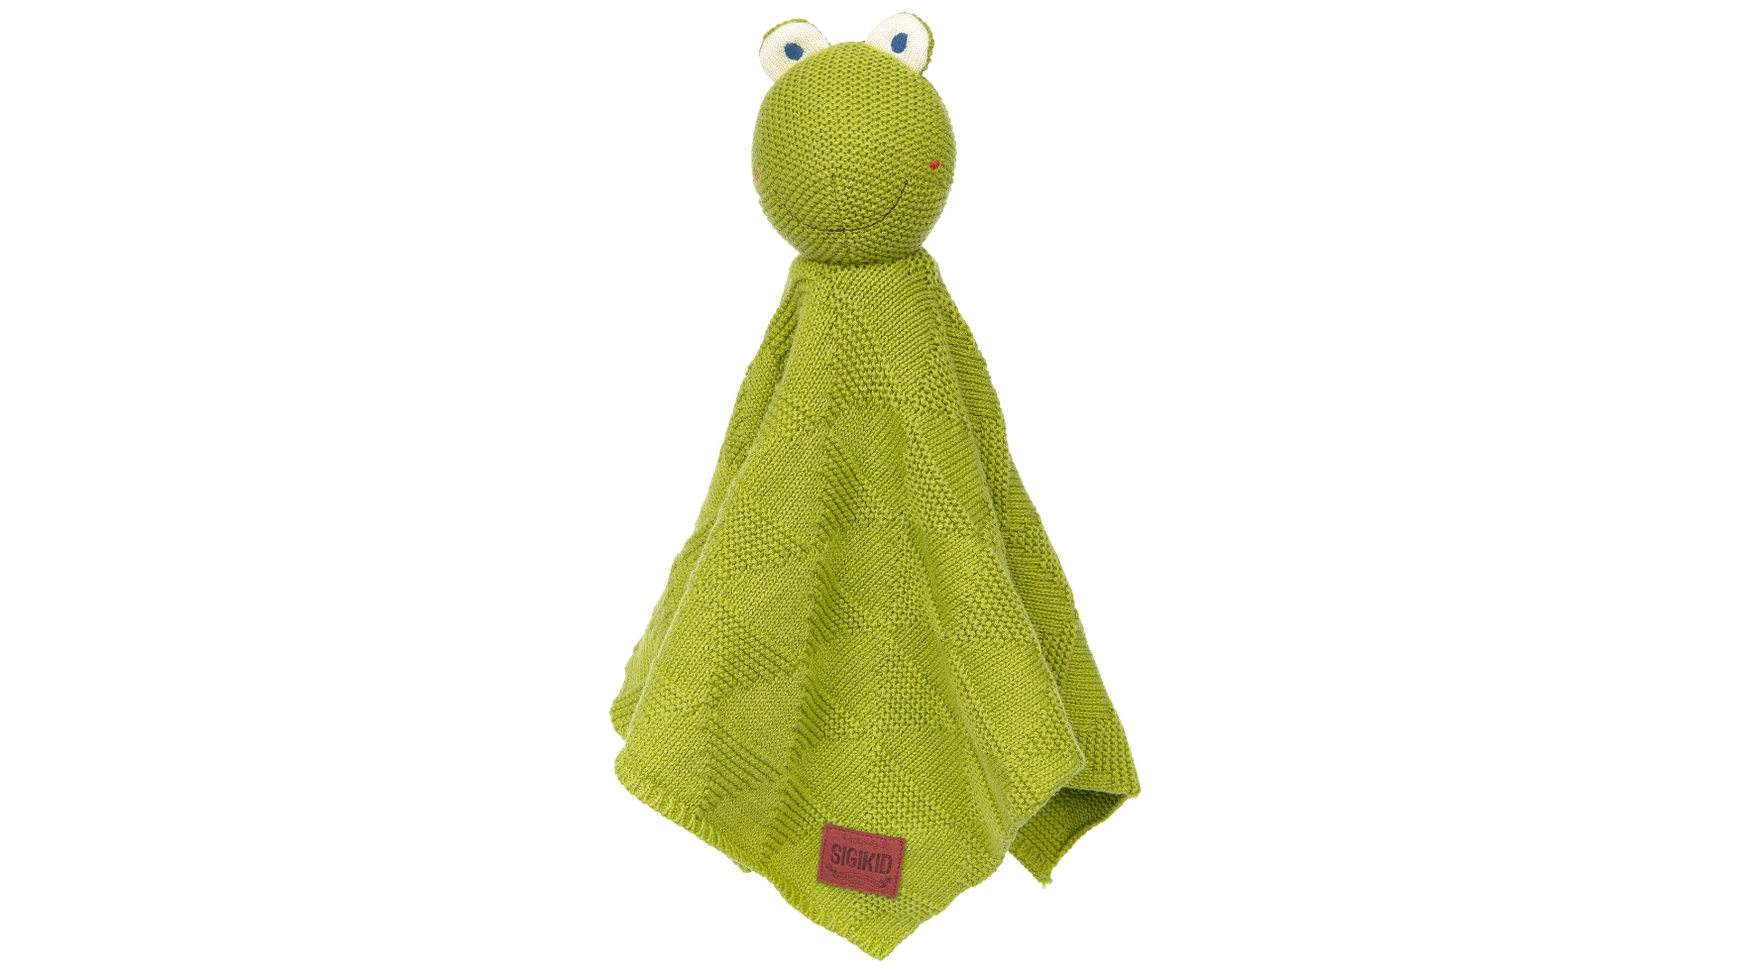 Детское вязаное одеяло-лягушка Sigikid детское одеяло bunny зеленая органическая коллекция sigikid